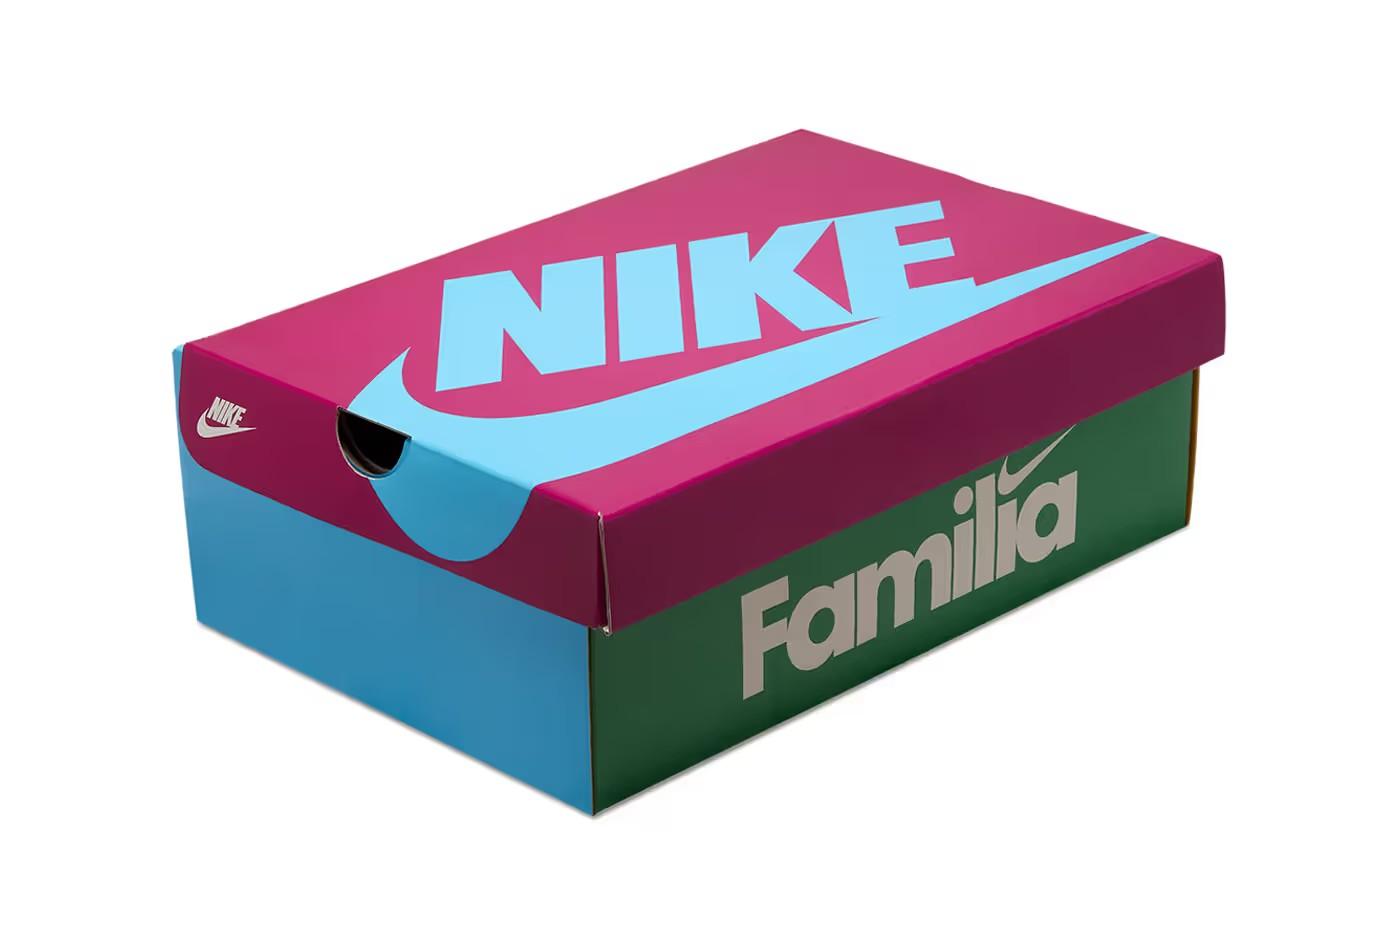 Nike Air Max 1 'Familia'